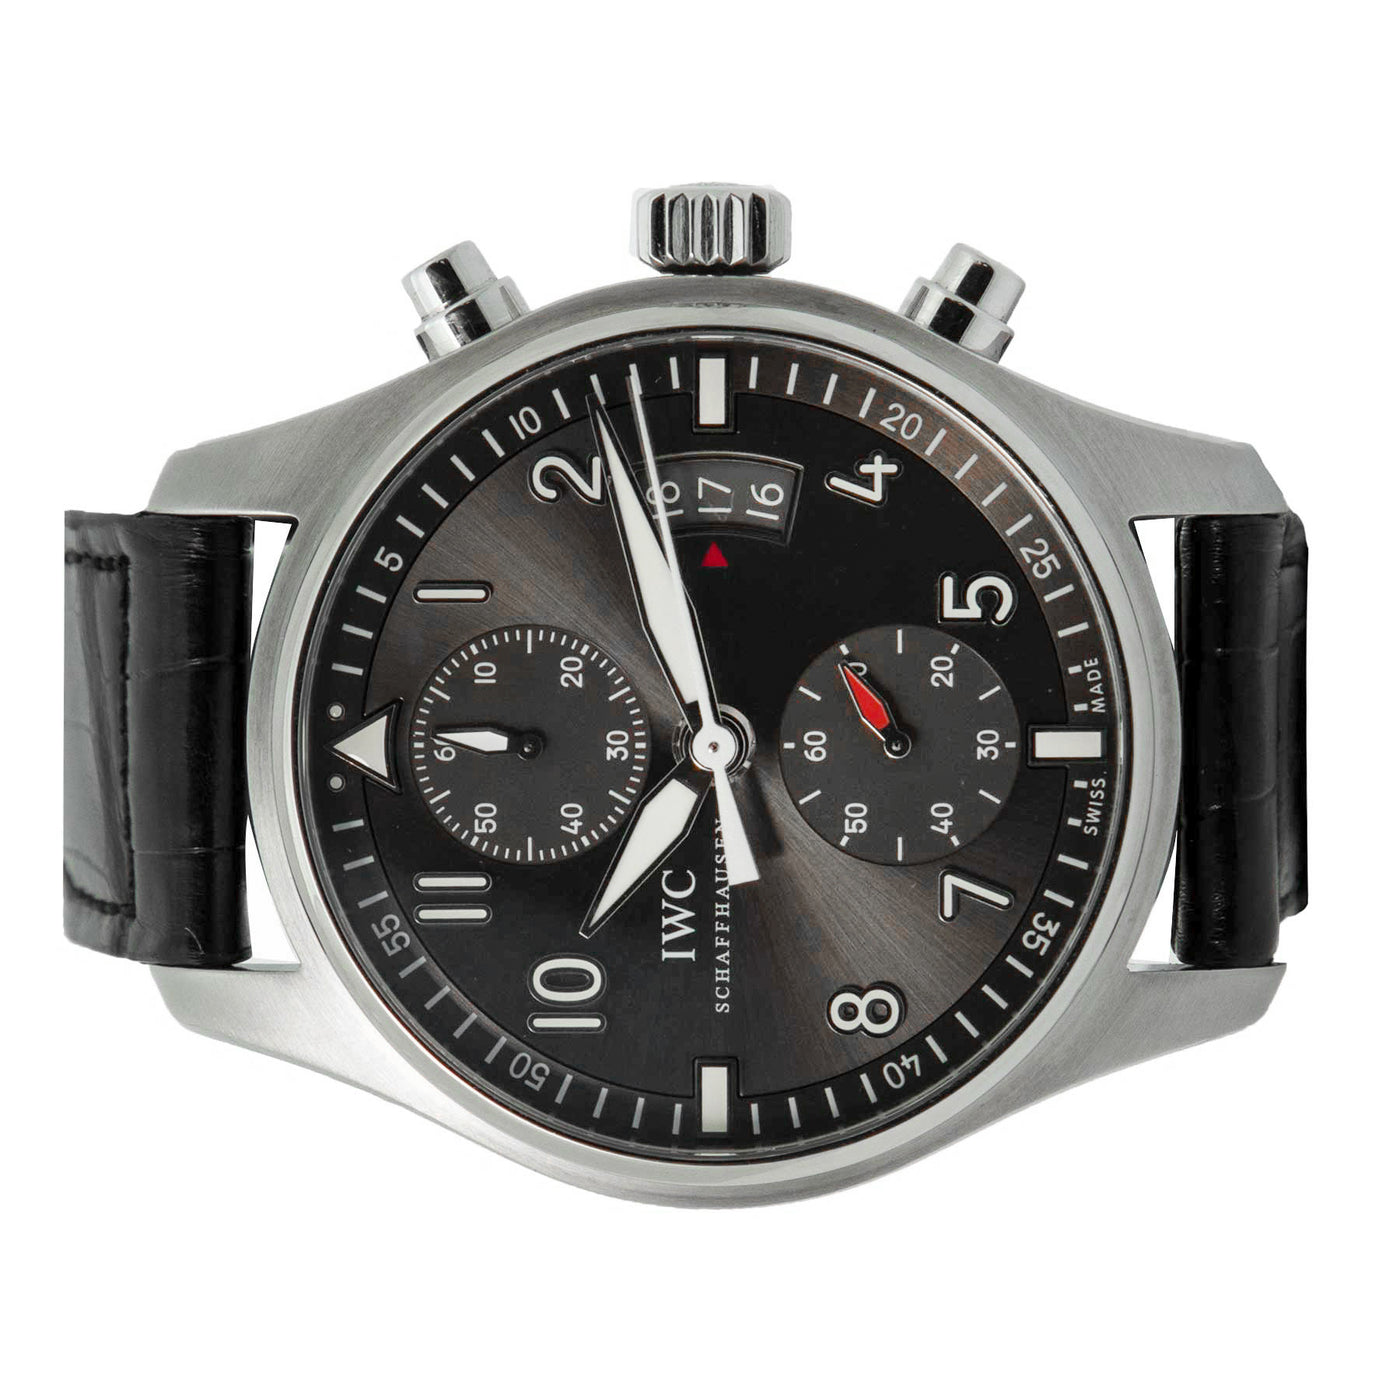 Spitfire Chronograph-Timepiece360